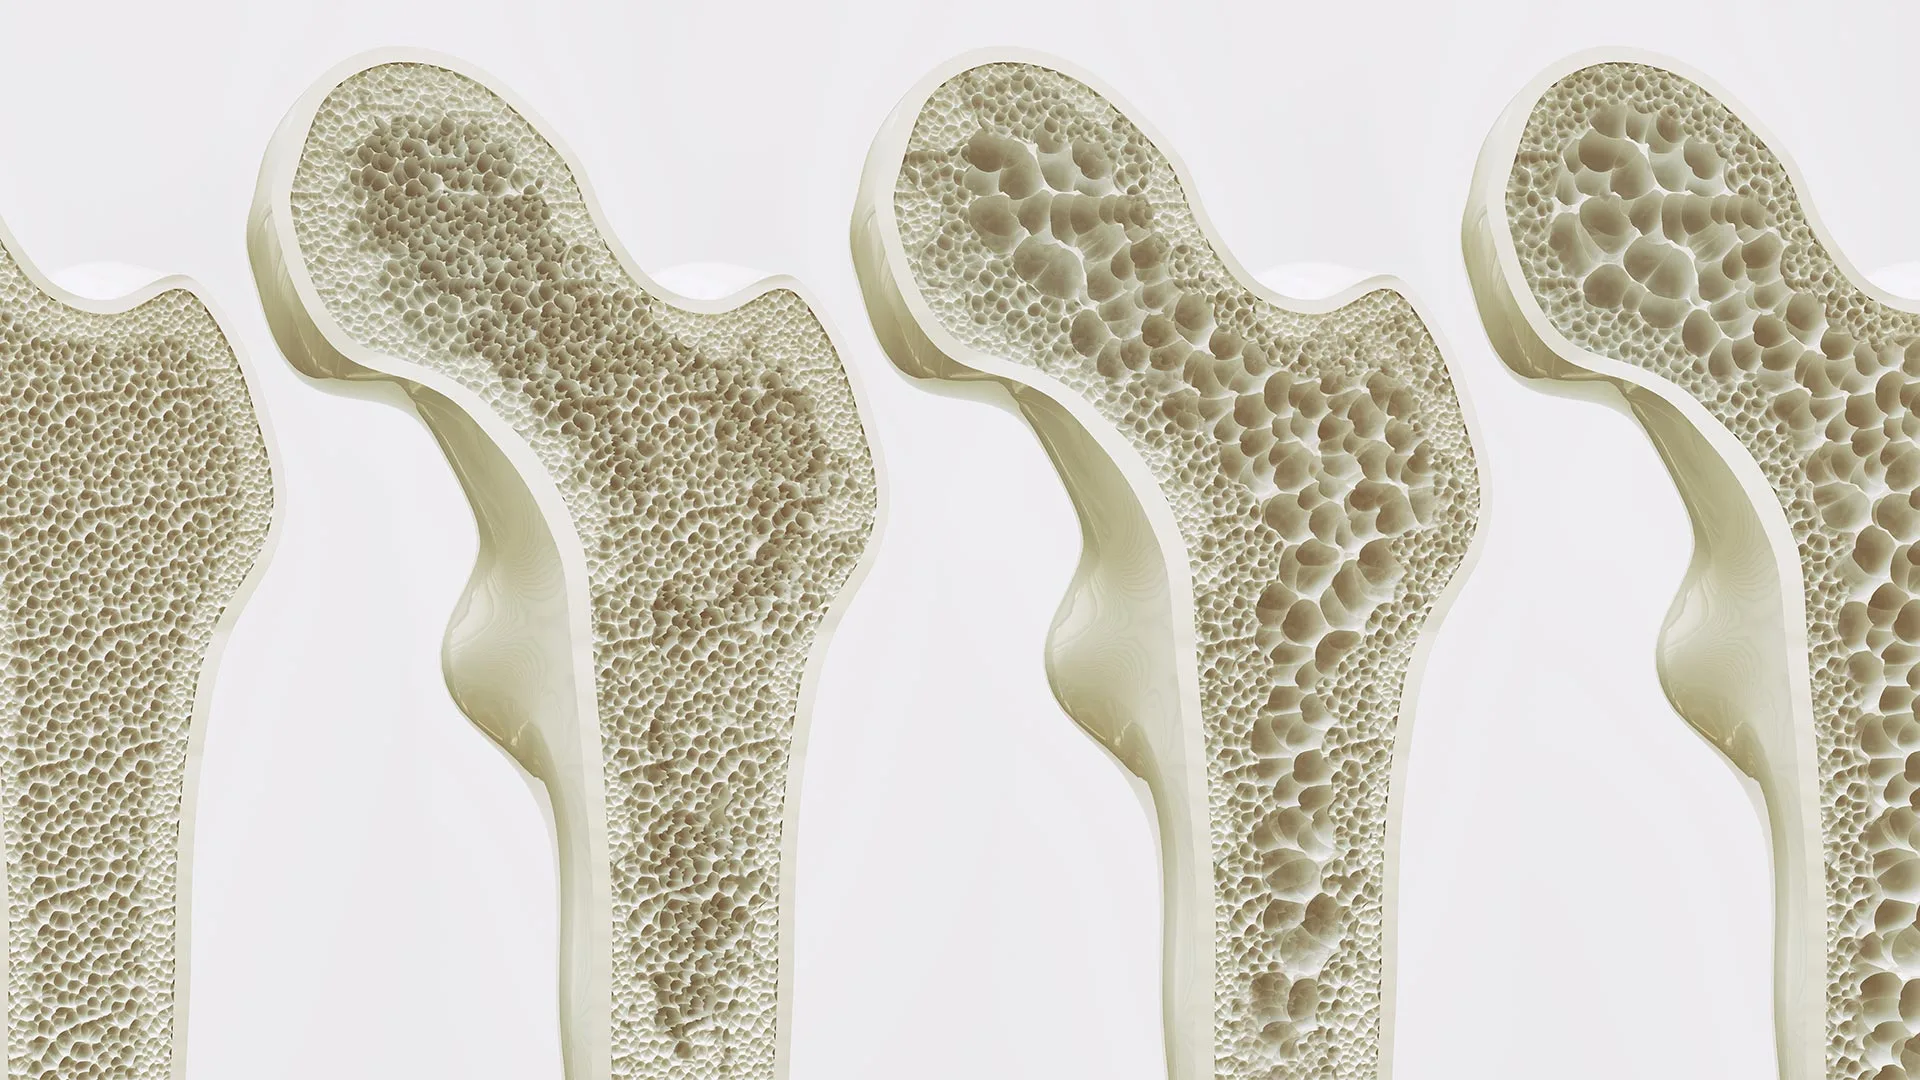 Experten Netzwerk Osteoporose Bild Osteoporose am Oberschenkelknochen